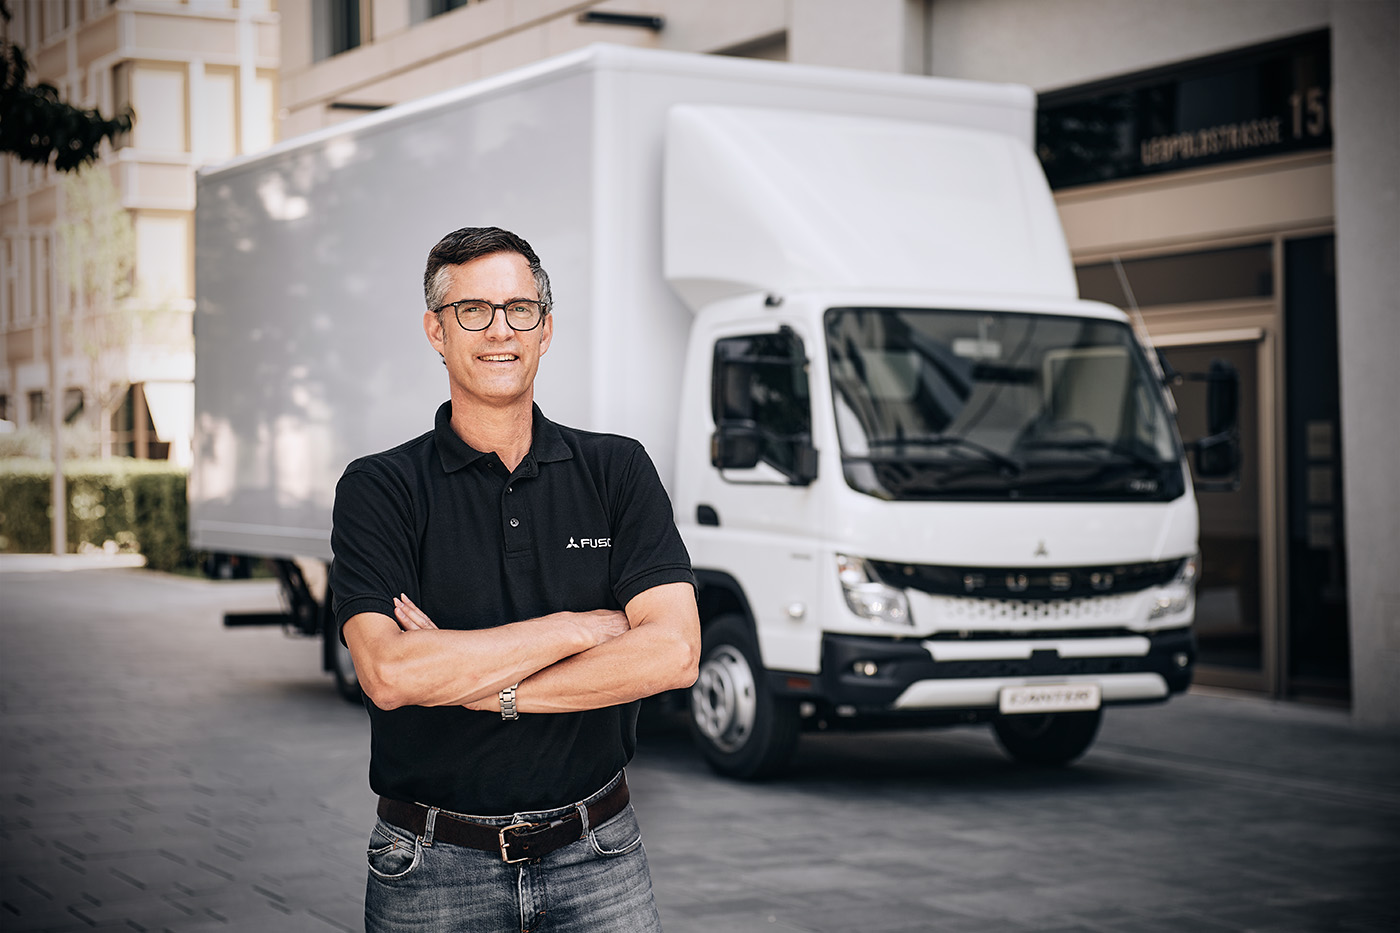 Mit FUSO Europe bekamen die Marke und der Canter vor rund 20 Jahren als Teil von Daimler Trucks eine neue Vertriebsorganisation in Deutschland. Erk Roennefarth, heute Leiter Marketing & Produktmanagement Europa, ist seit damals dabei – und kennt sich aus mit Exoten, Pionierarbeit und Canter-Liebe.